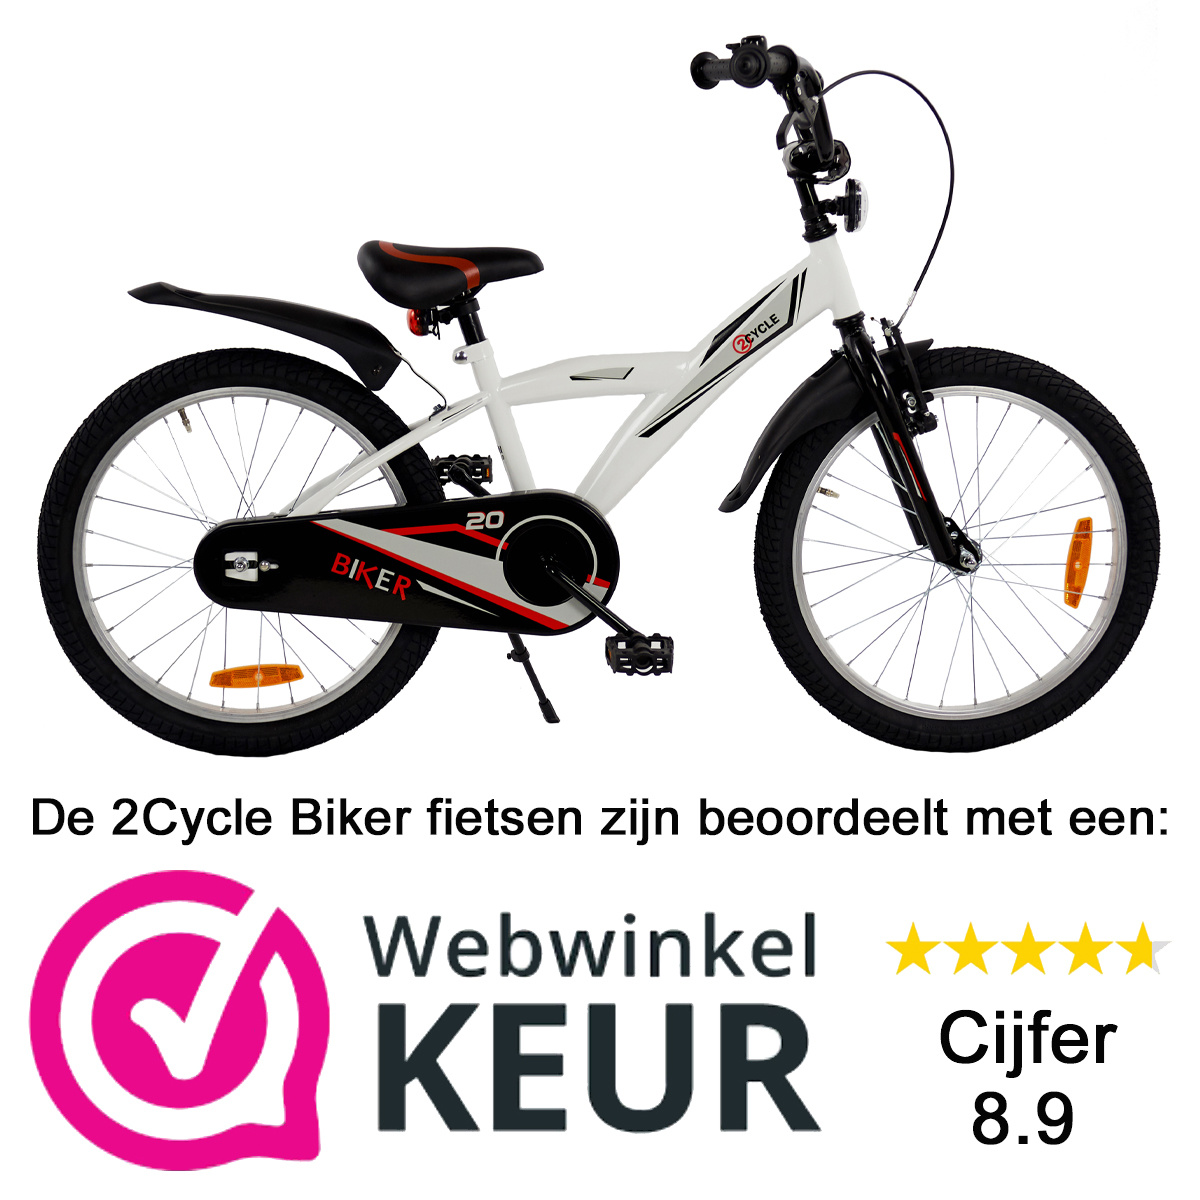 Auto begaan kwartaal Mooie 2Cycle Biker jongensfiets 20 inch direct online bestellen |  Prijskiller.nl